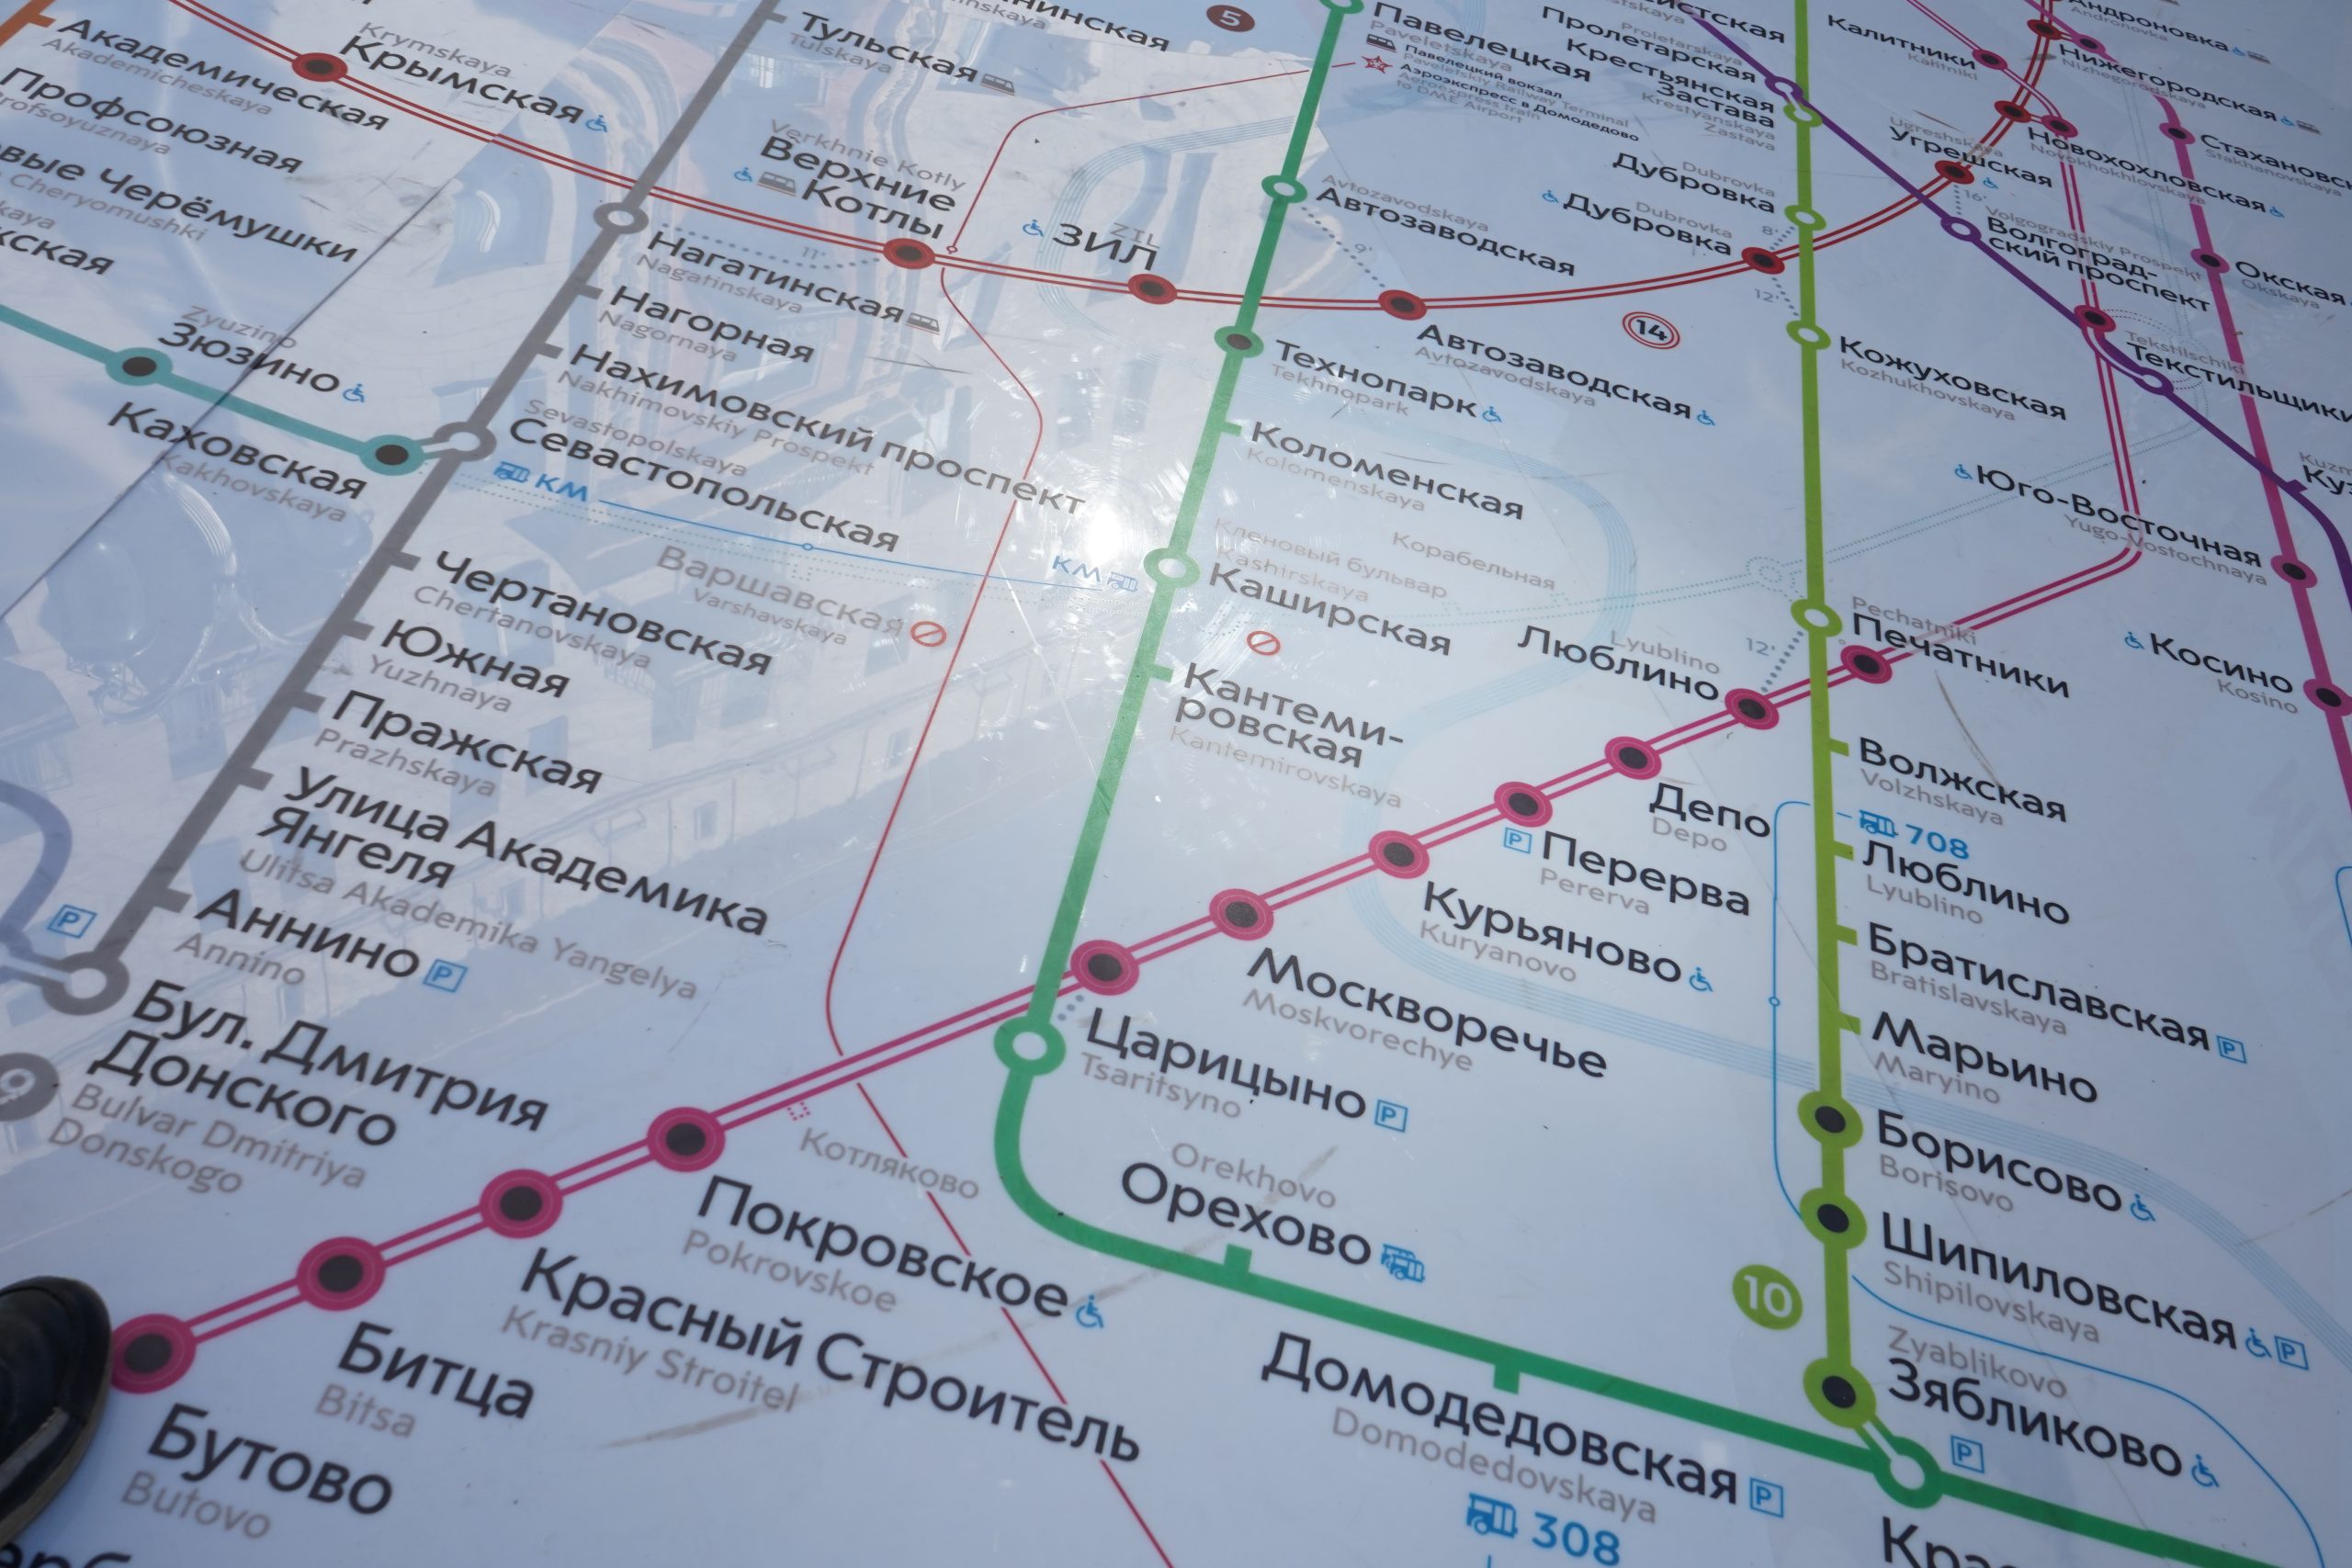 Подключиться к сети вайфай Московского метрополитена стало проще